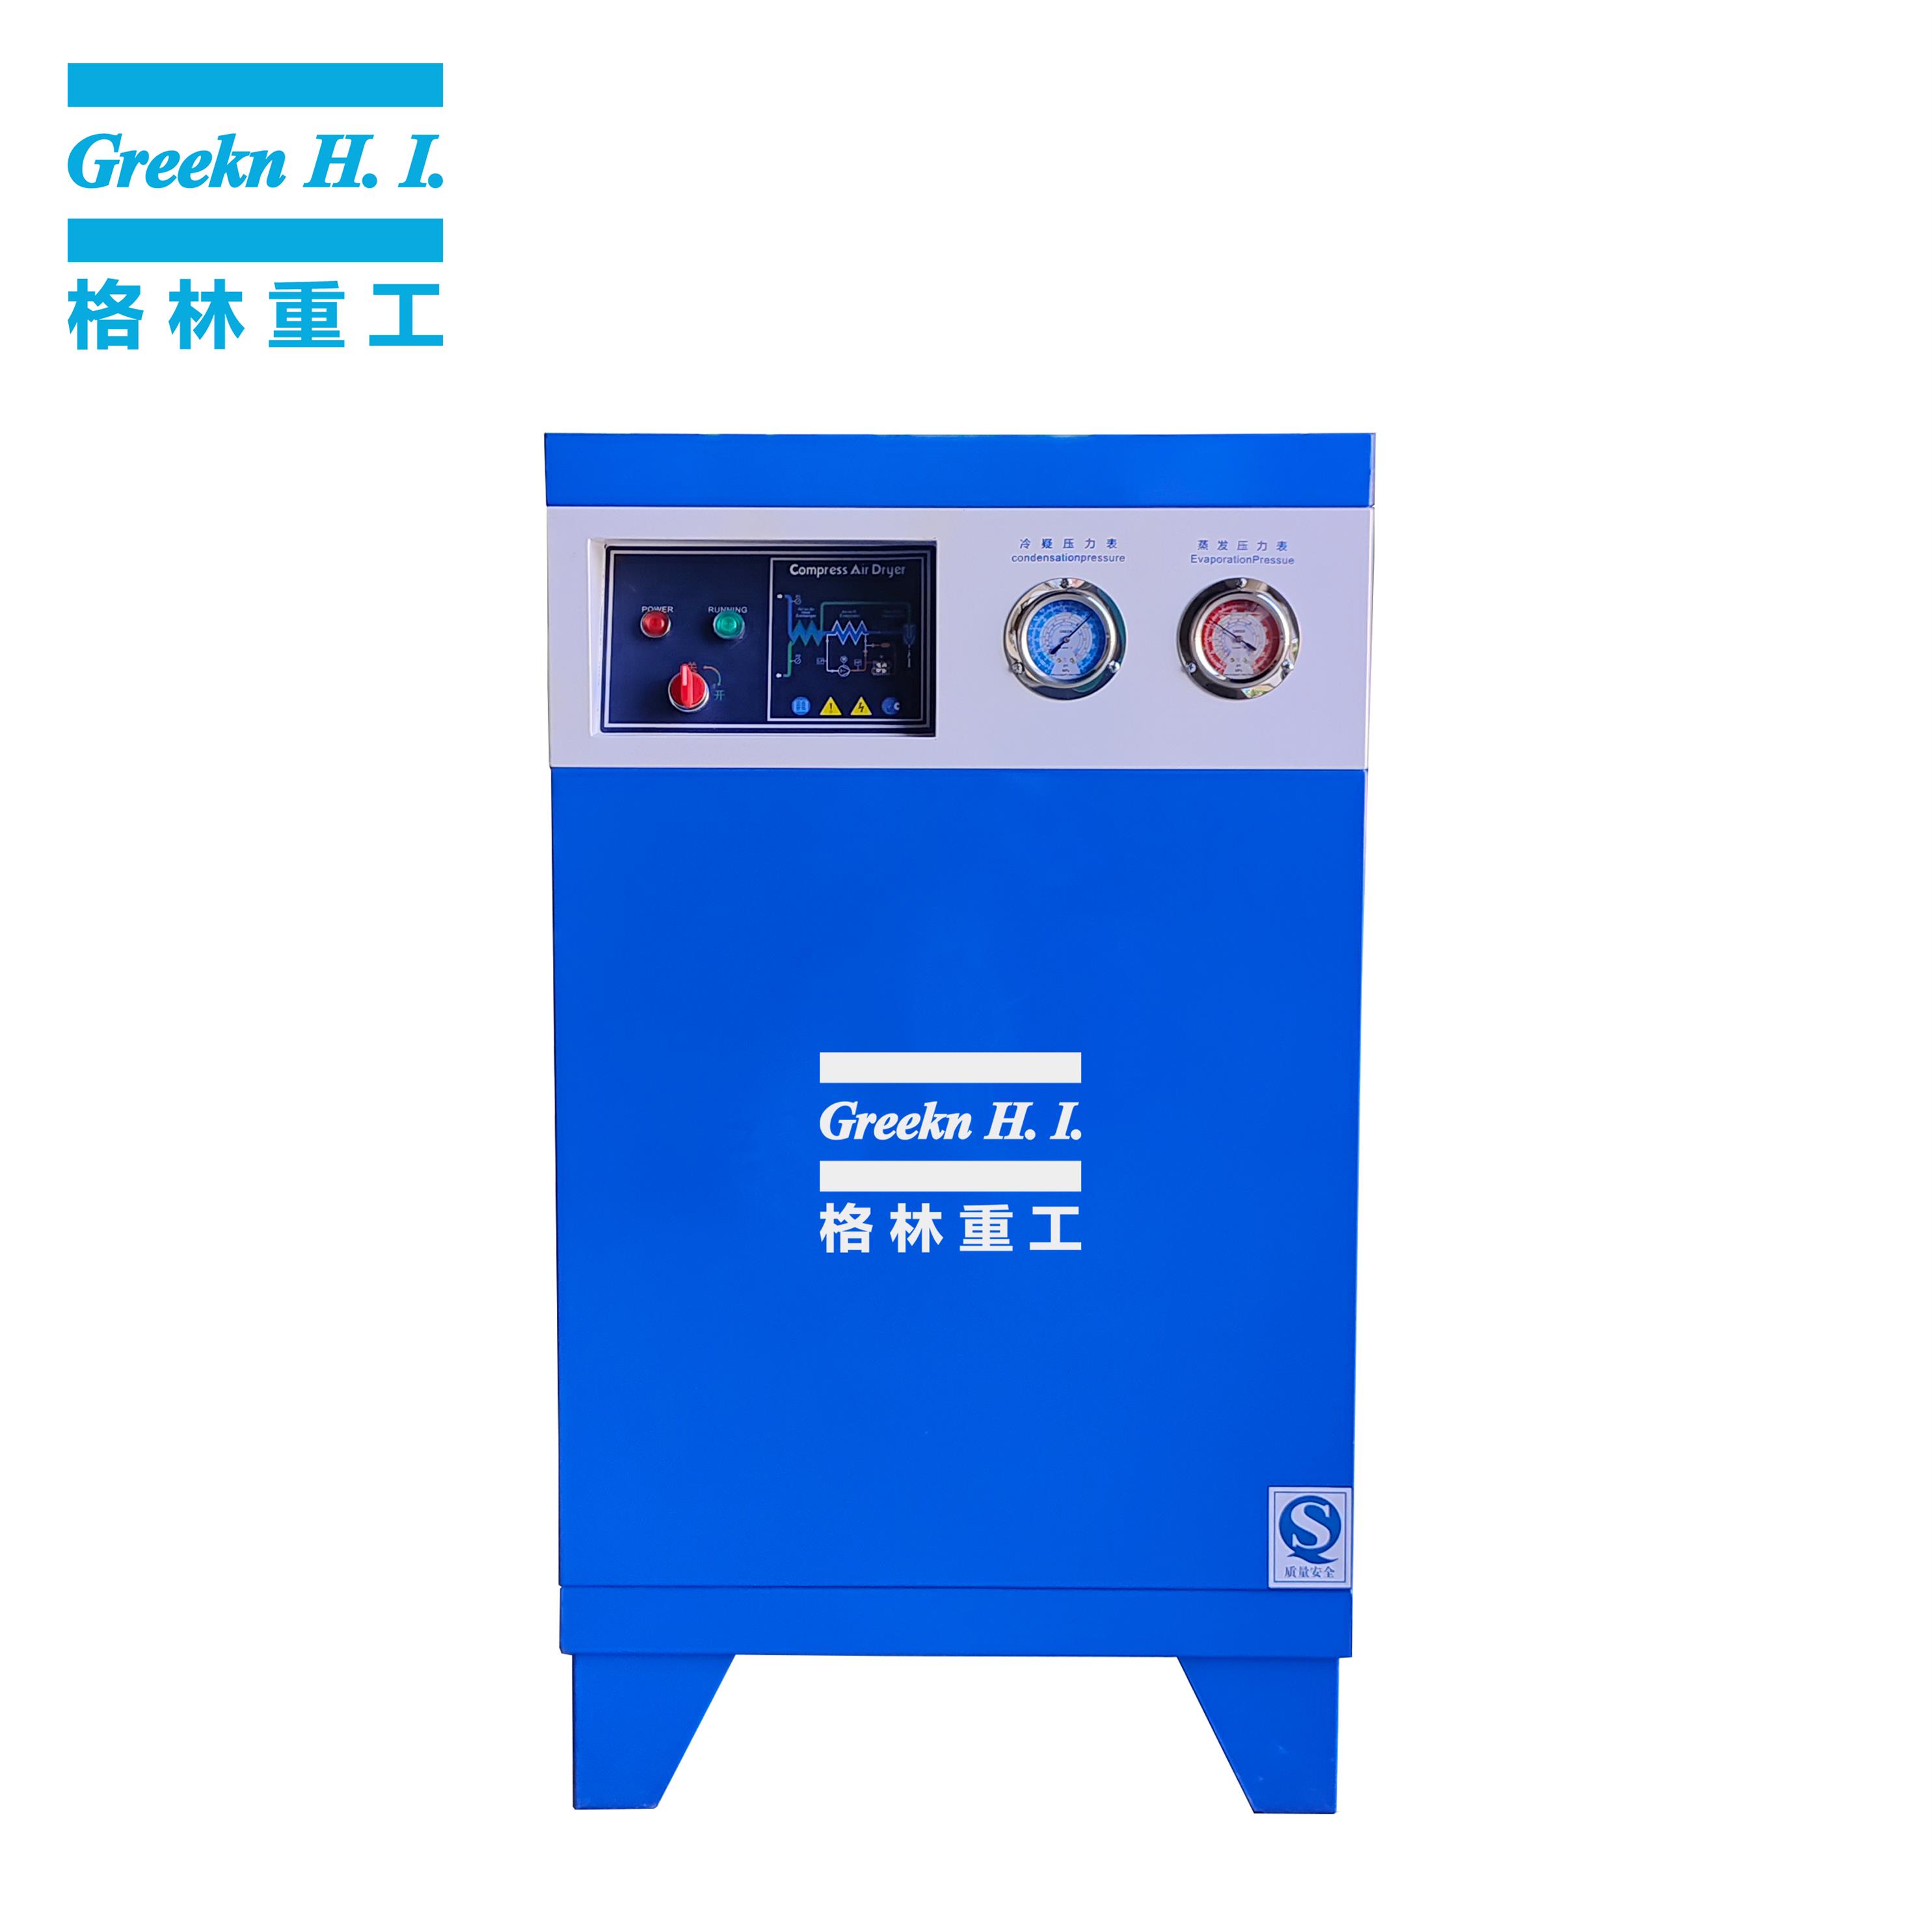 Greeknhi air dryer FD120 refrigerant air dryer for screw air compressor